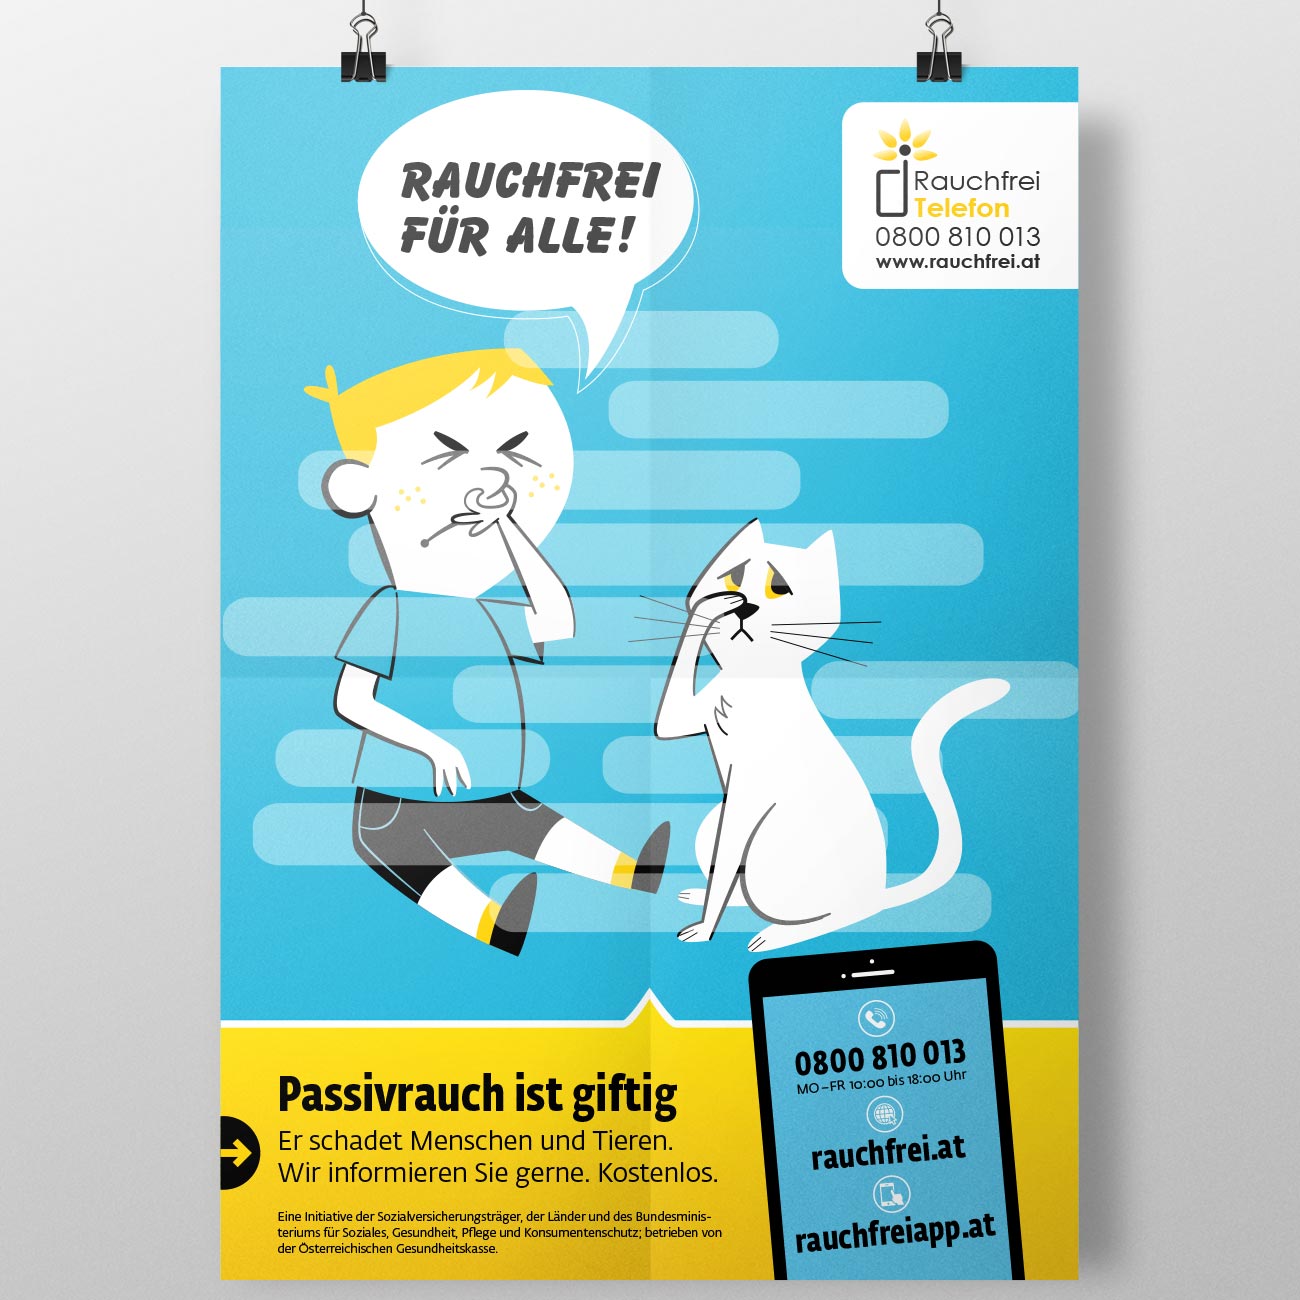 Corporate Design und Illustration für das Rauchfreitelefon der Österreichischen Gesundheitskasse von studio mishugge – Passivrauch